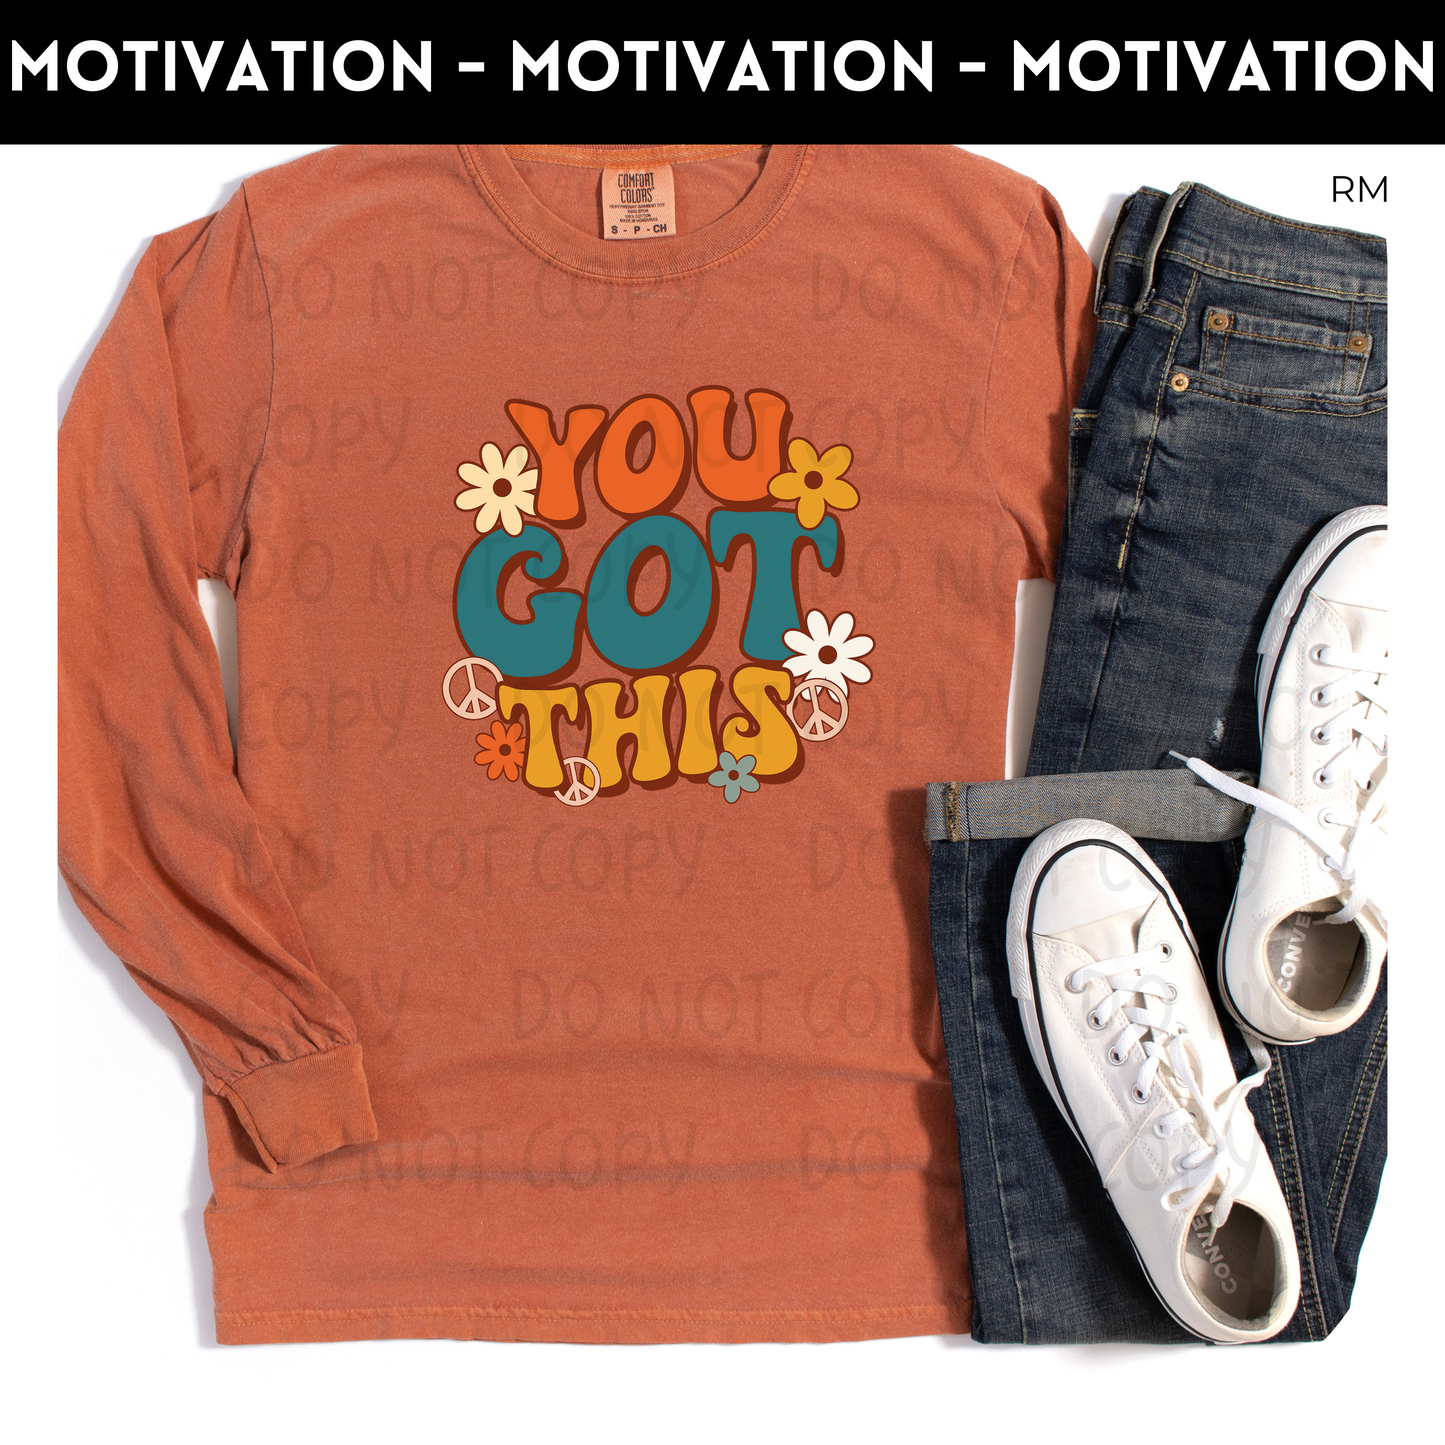 You Got This Adult Shirt- Inspirational 878